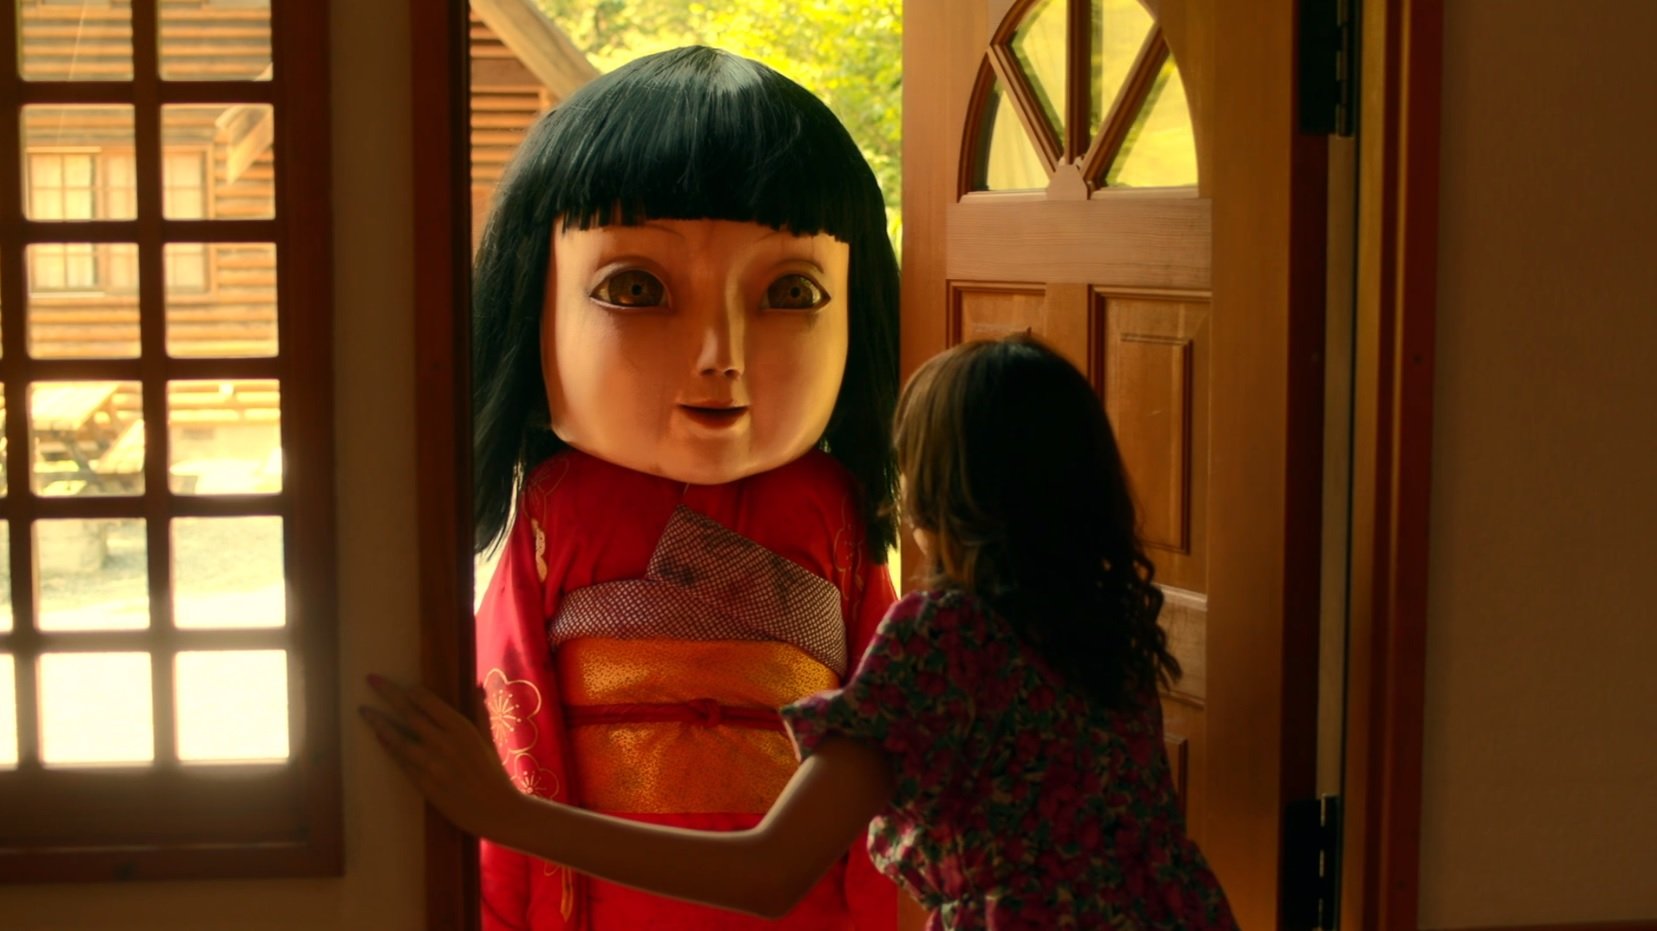 恐怖人形 ホラー好きはぜひ チェーンソーを持った人形 話題の画像プラス